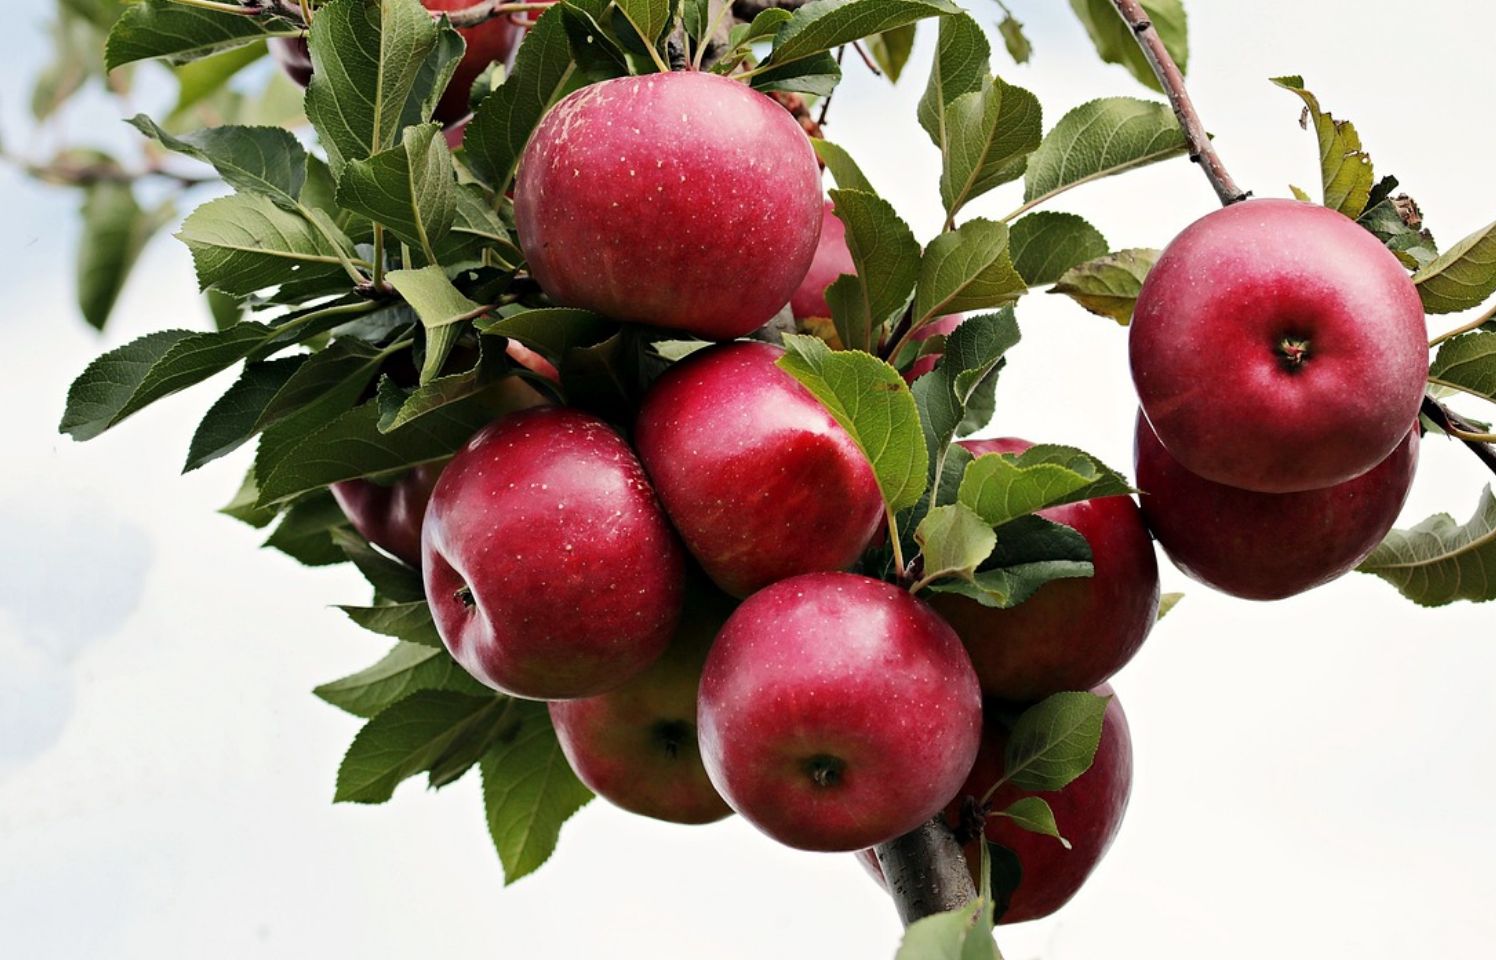 Empat manfaat cuka apel untuk kesehatan kulit wajah.